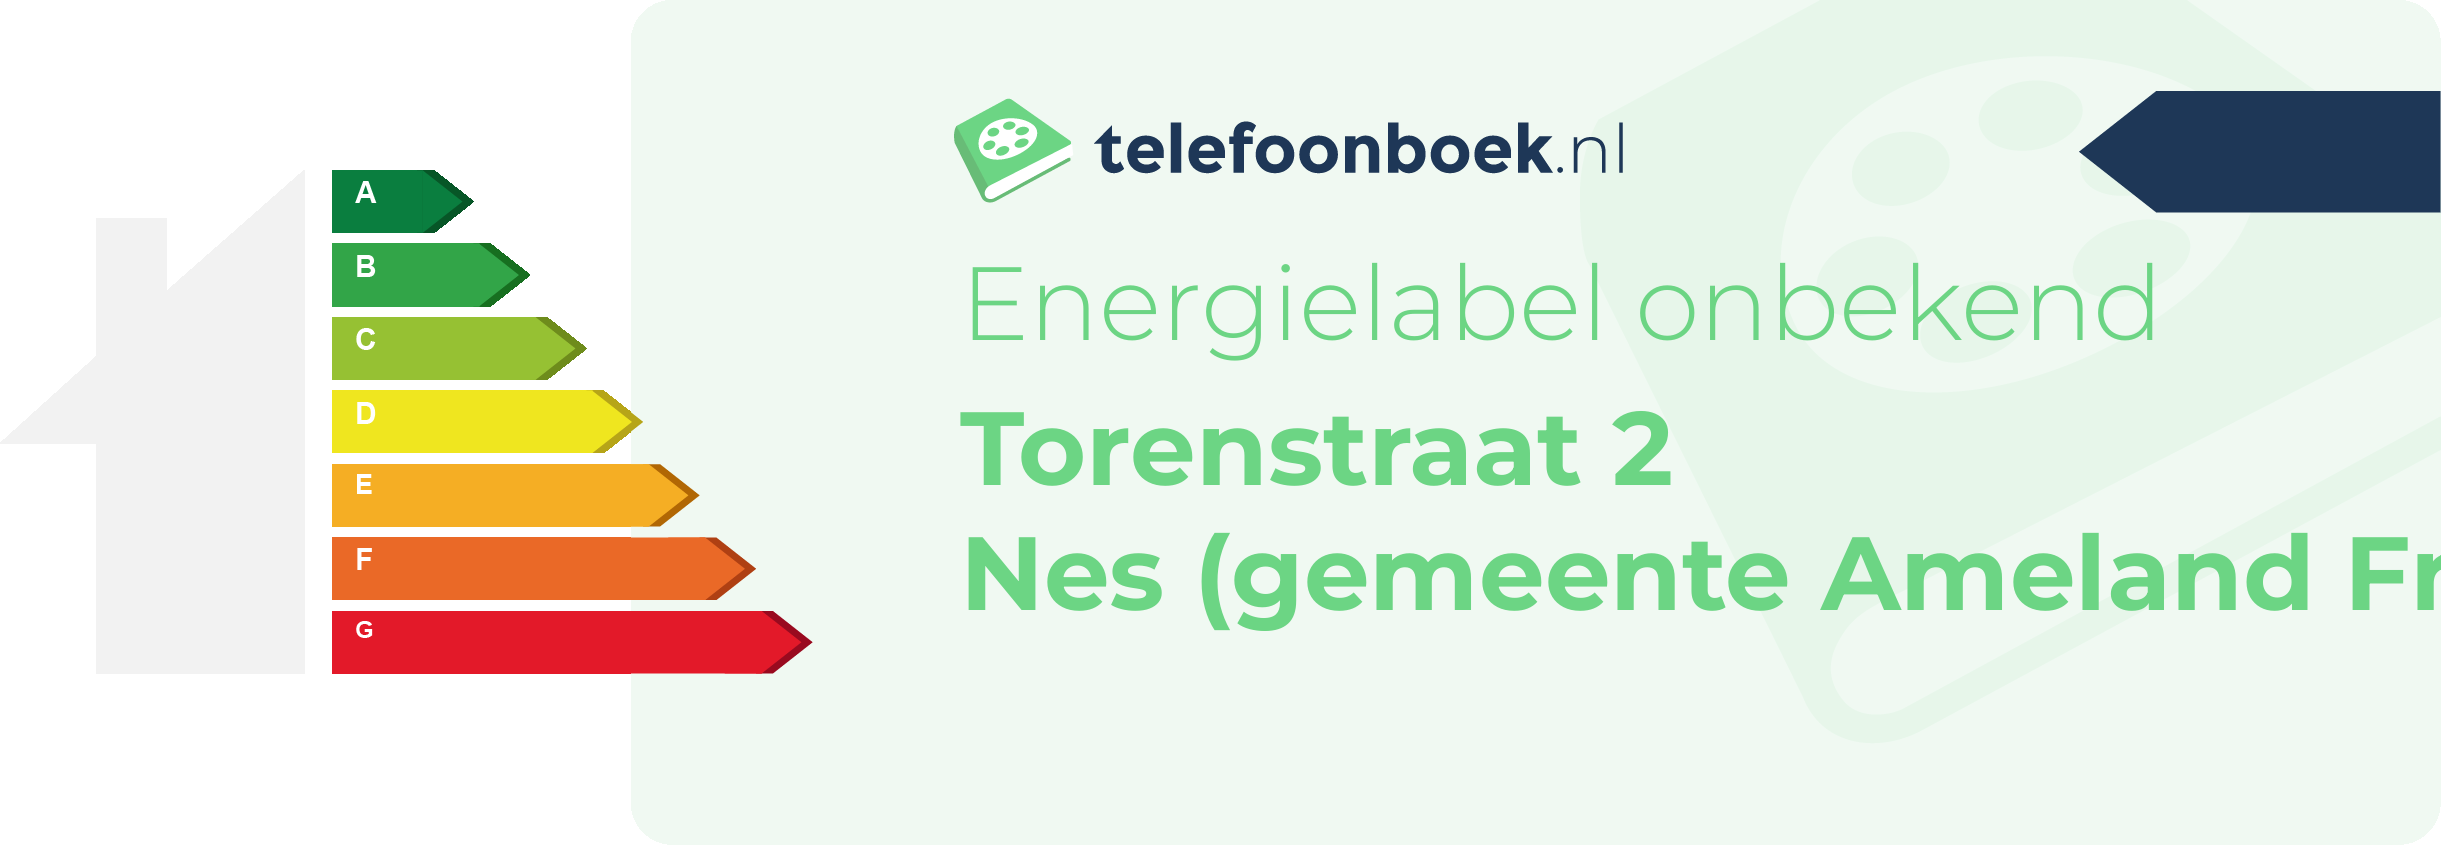 Energielabel Torenstraat 2 Nes (gemeente Ameland Friesland)